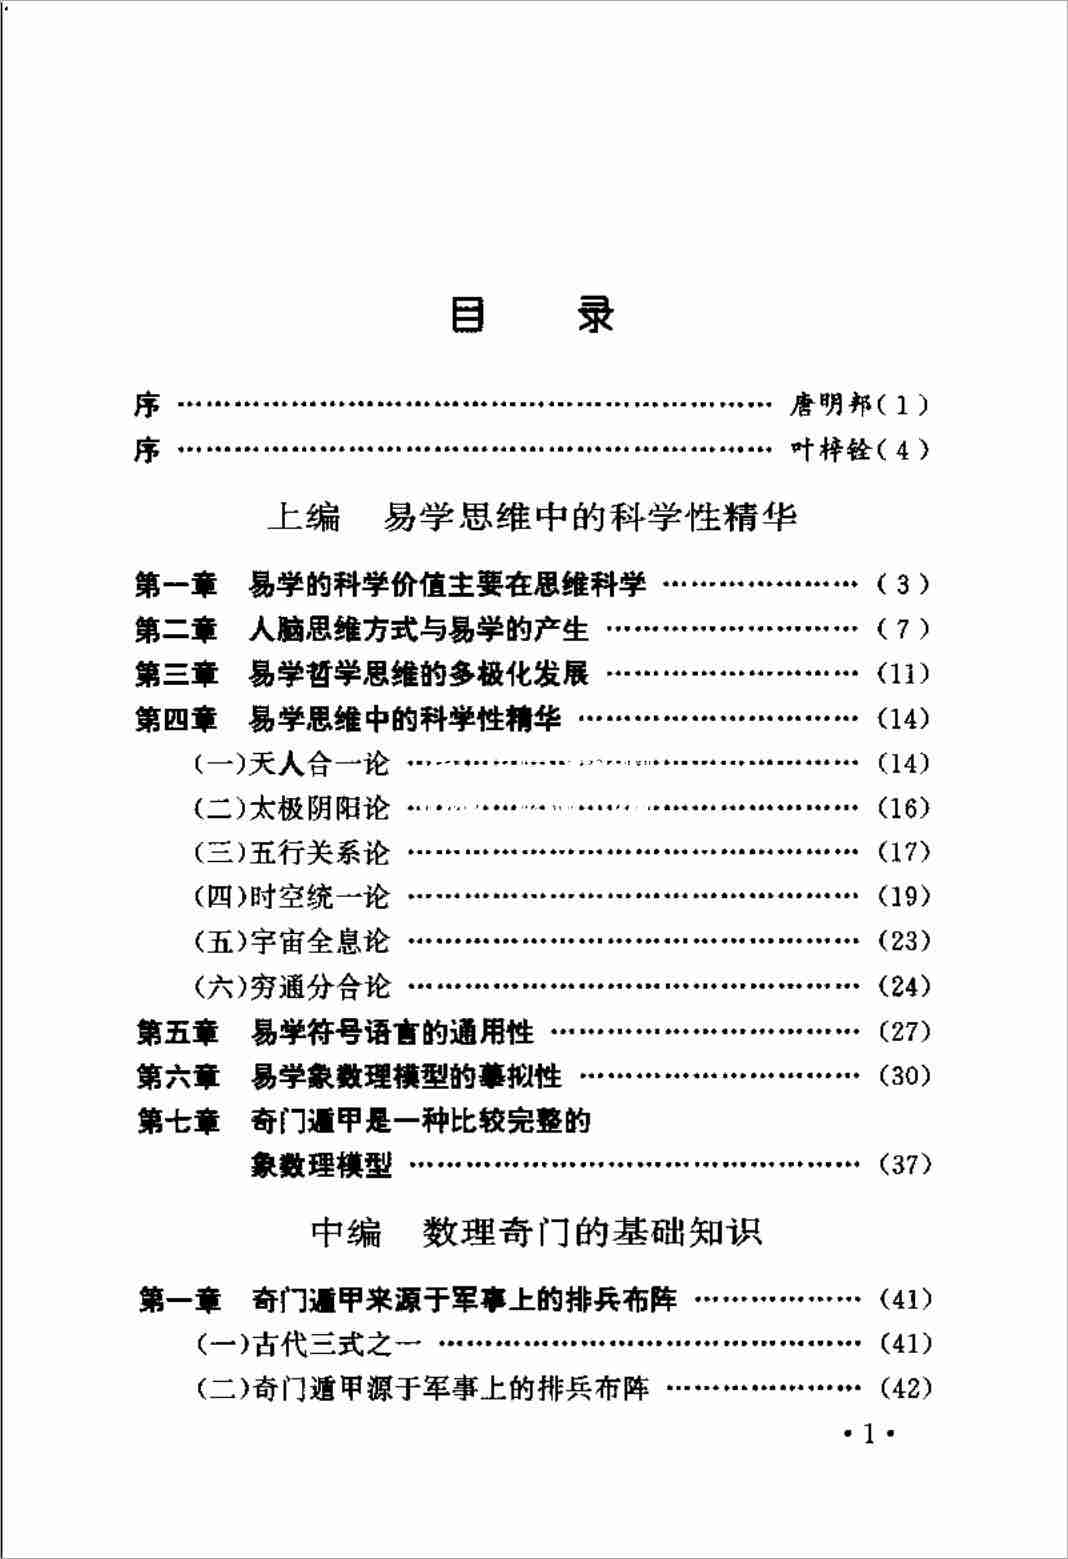 張志春著奇門遁甲入門教程神奇之門.pdf